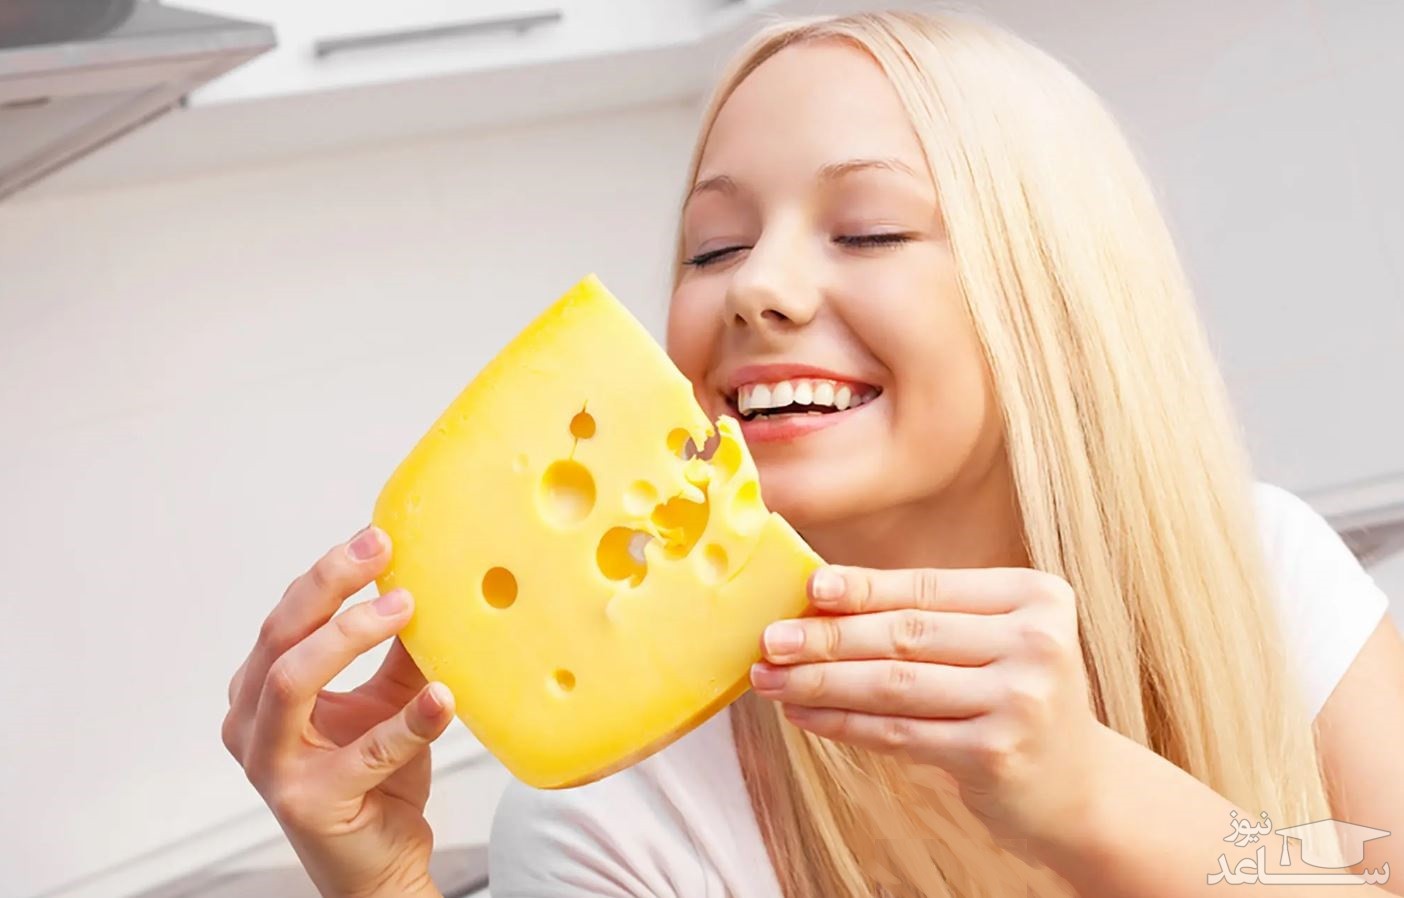 دیدن خوردن پنیر در خواب چه تعبیری دارد؟  /  تعبیر خواب پنیر